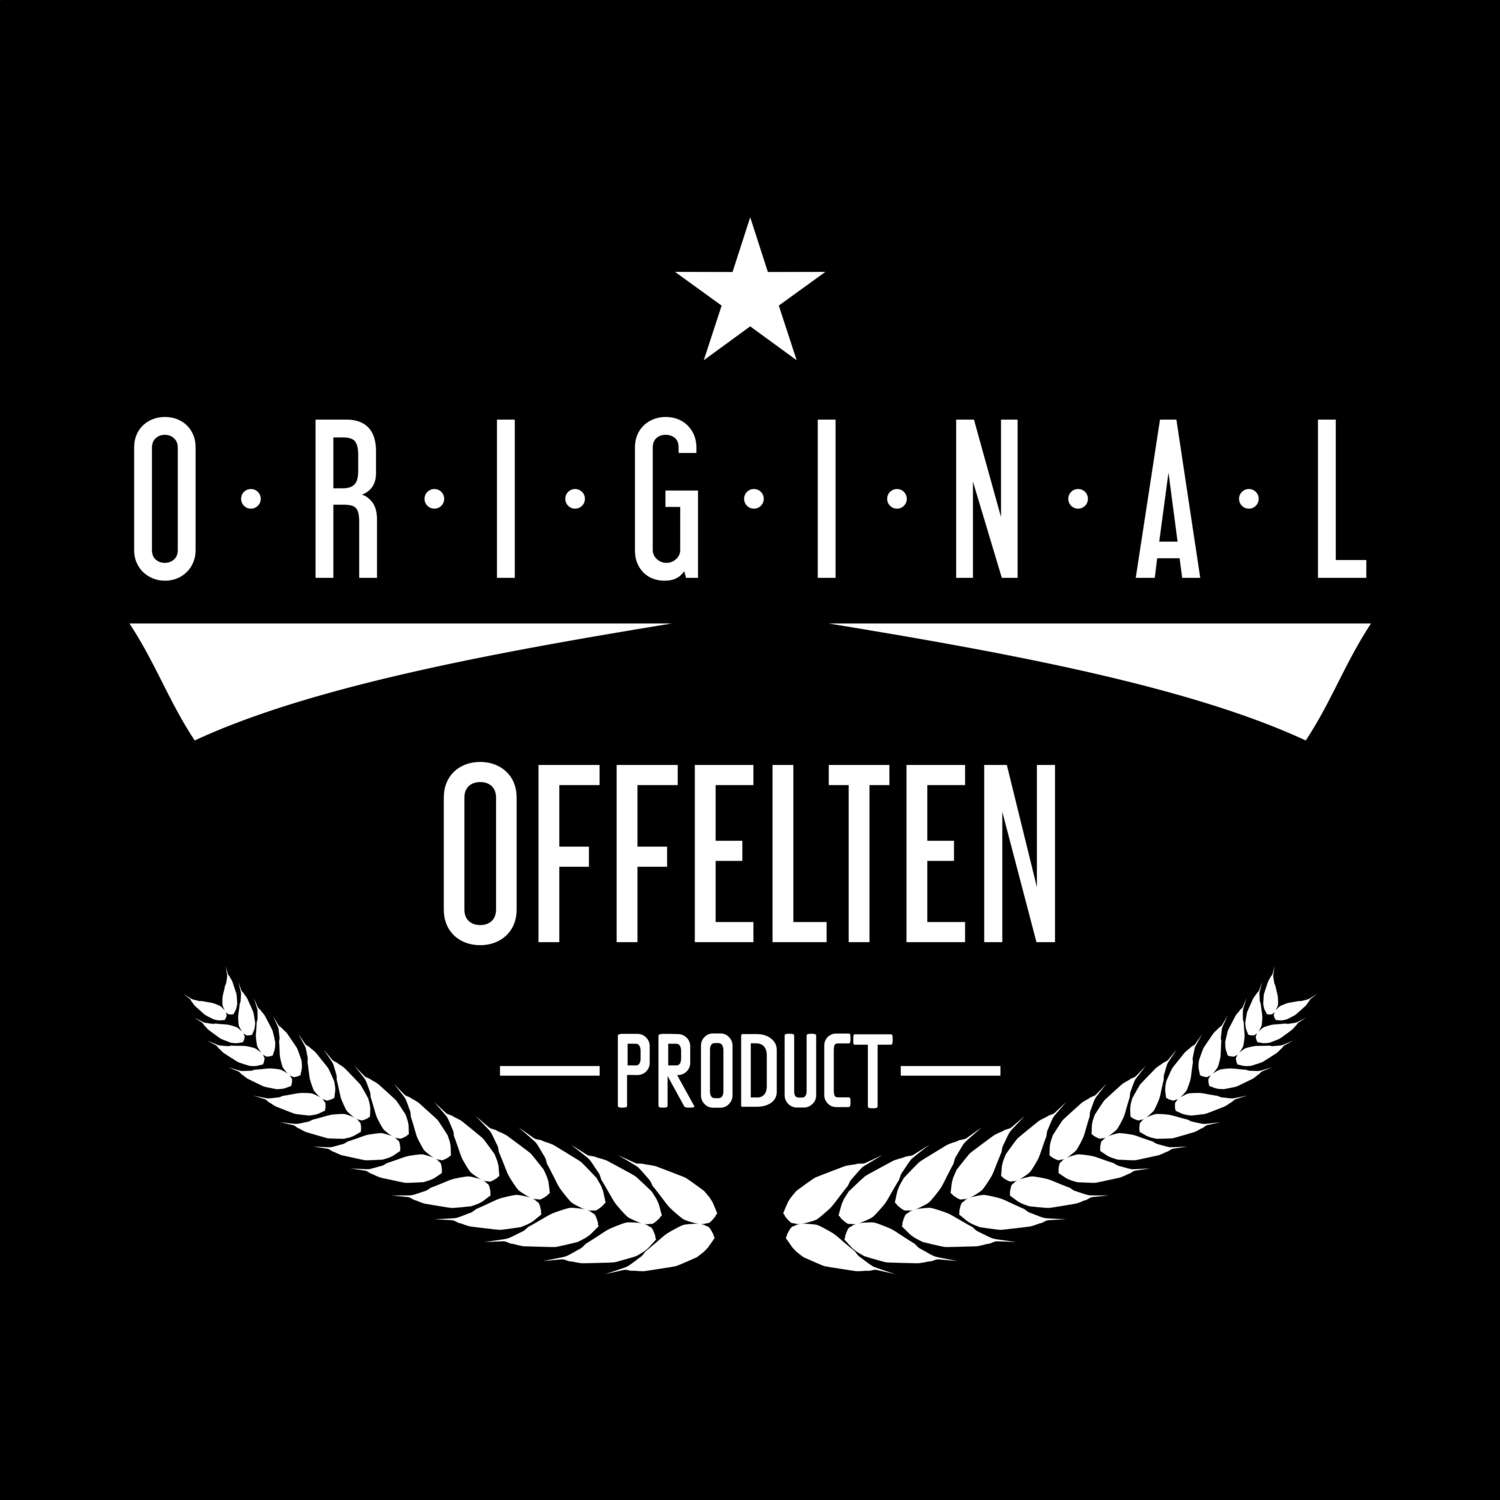 Offelten T-Shirt »Original Product«